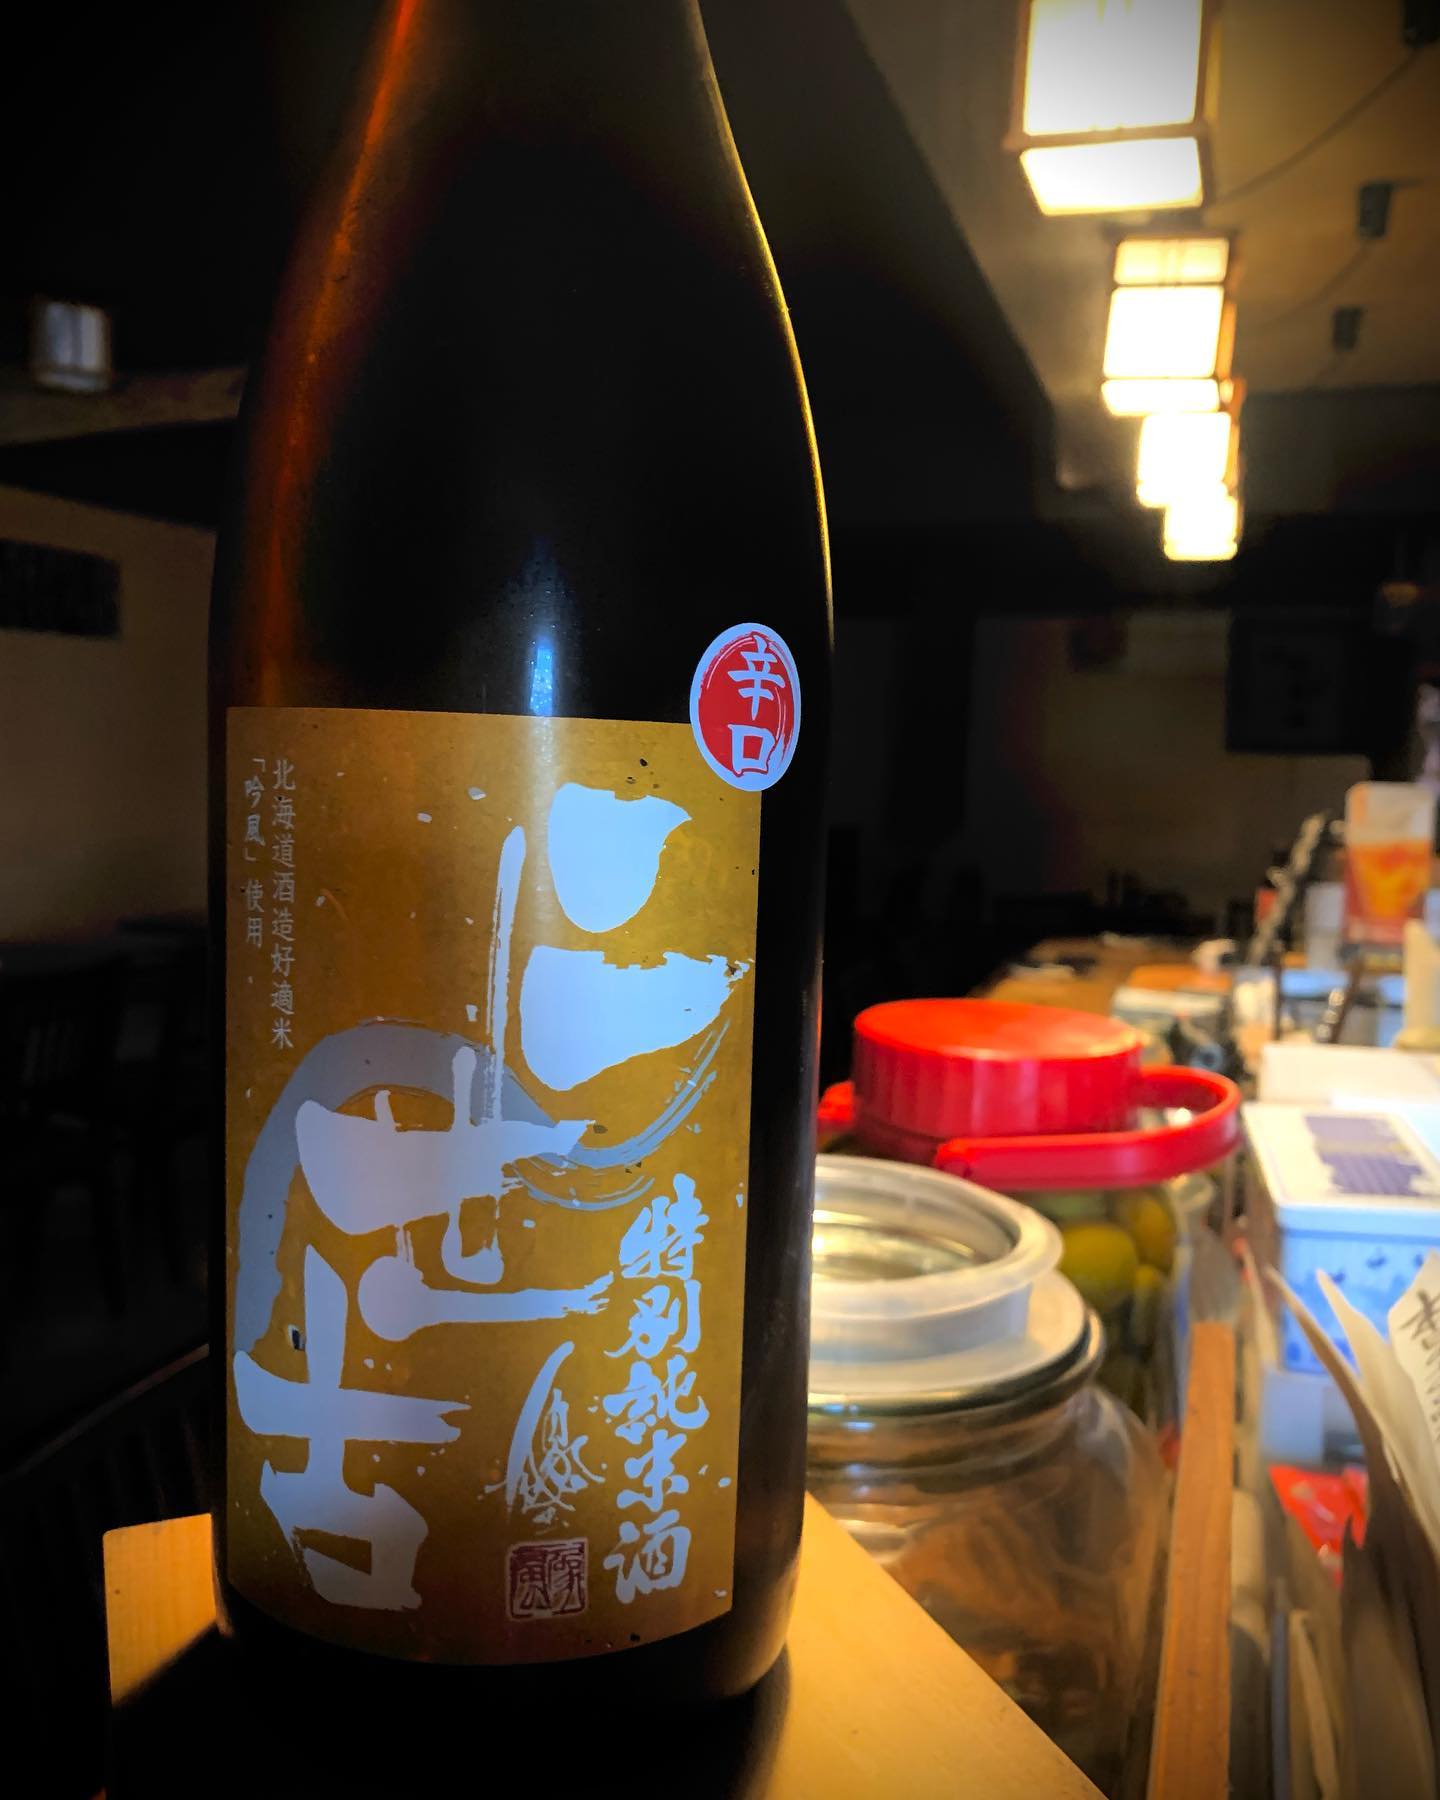 本日の日本酒紹介
【二世古】

北海道生まれの酒造好適米「吟風」で作られた昔ながらの日本酒。
穏やかな香りと優しい旨味、適度な酸もあって食中に向いた味わいです。
  #